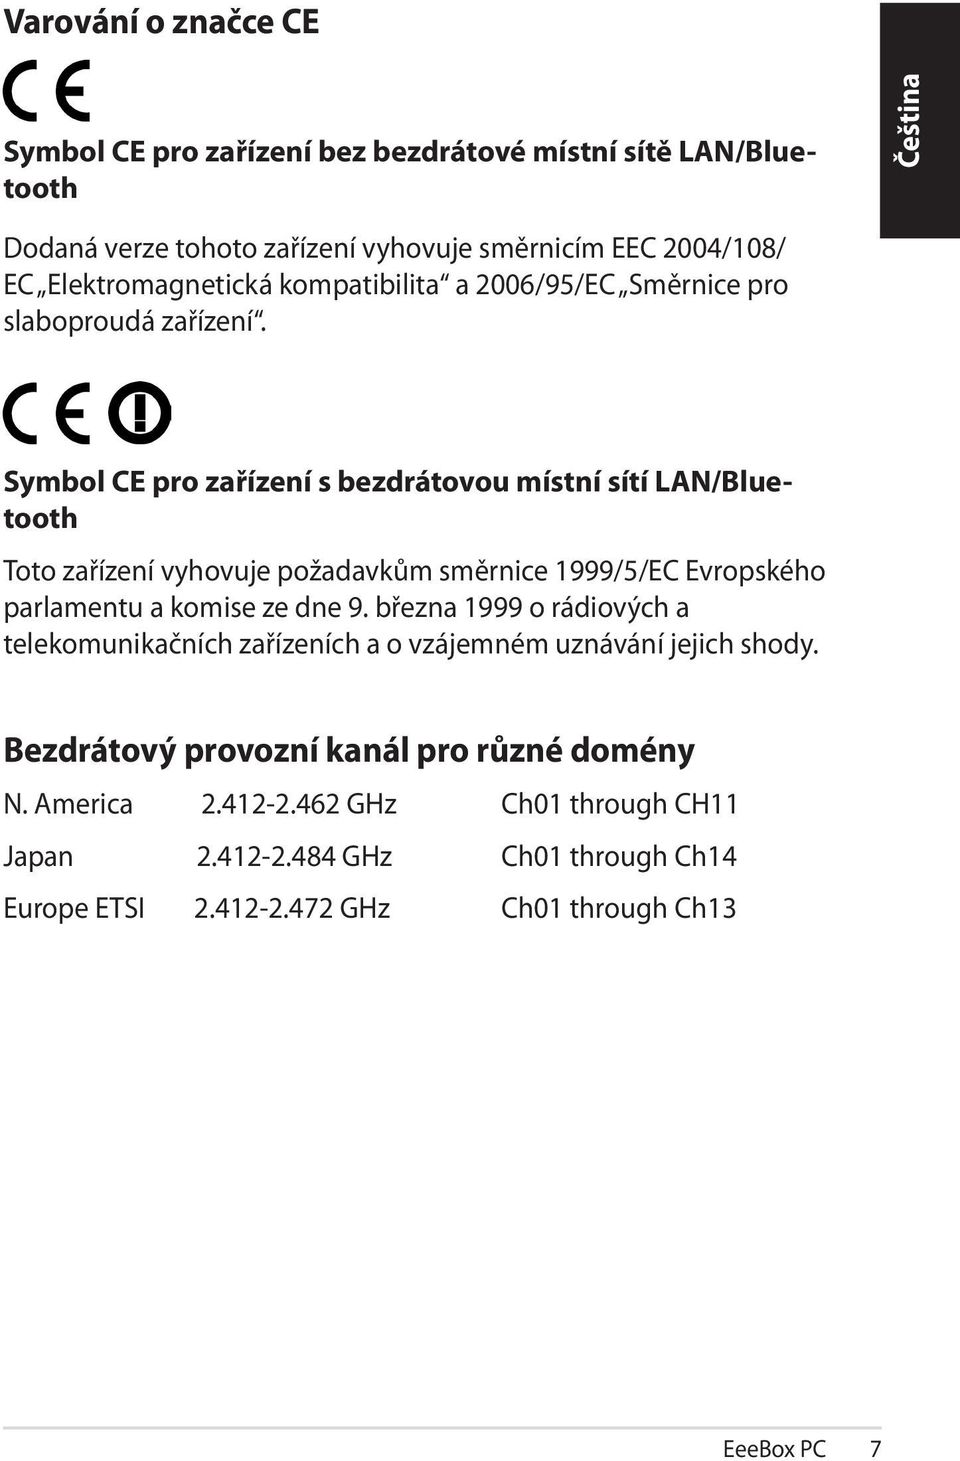 Symbol CE pro zařízení s bezdrátovou místní sítí LAN/Bluetooth Toto zařízení vyhovuje požadavkům směrnice 1999/5/EC Evropského parlamentu a komise ze dne 9.